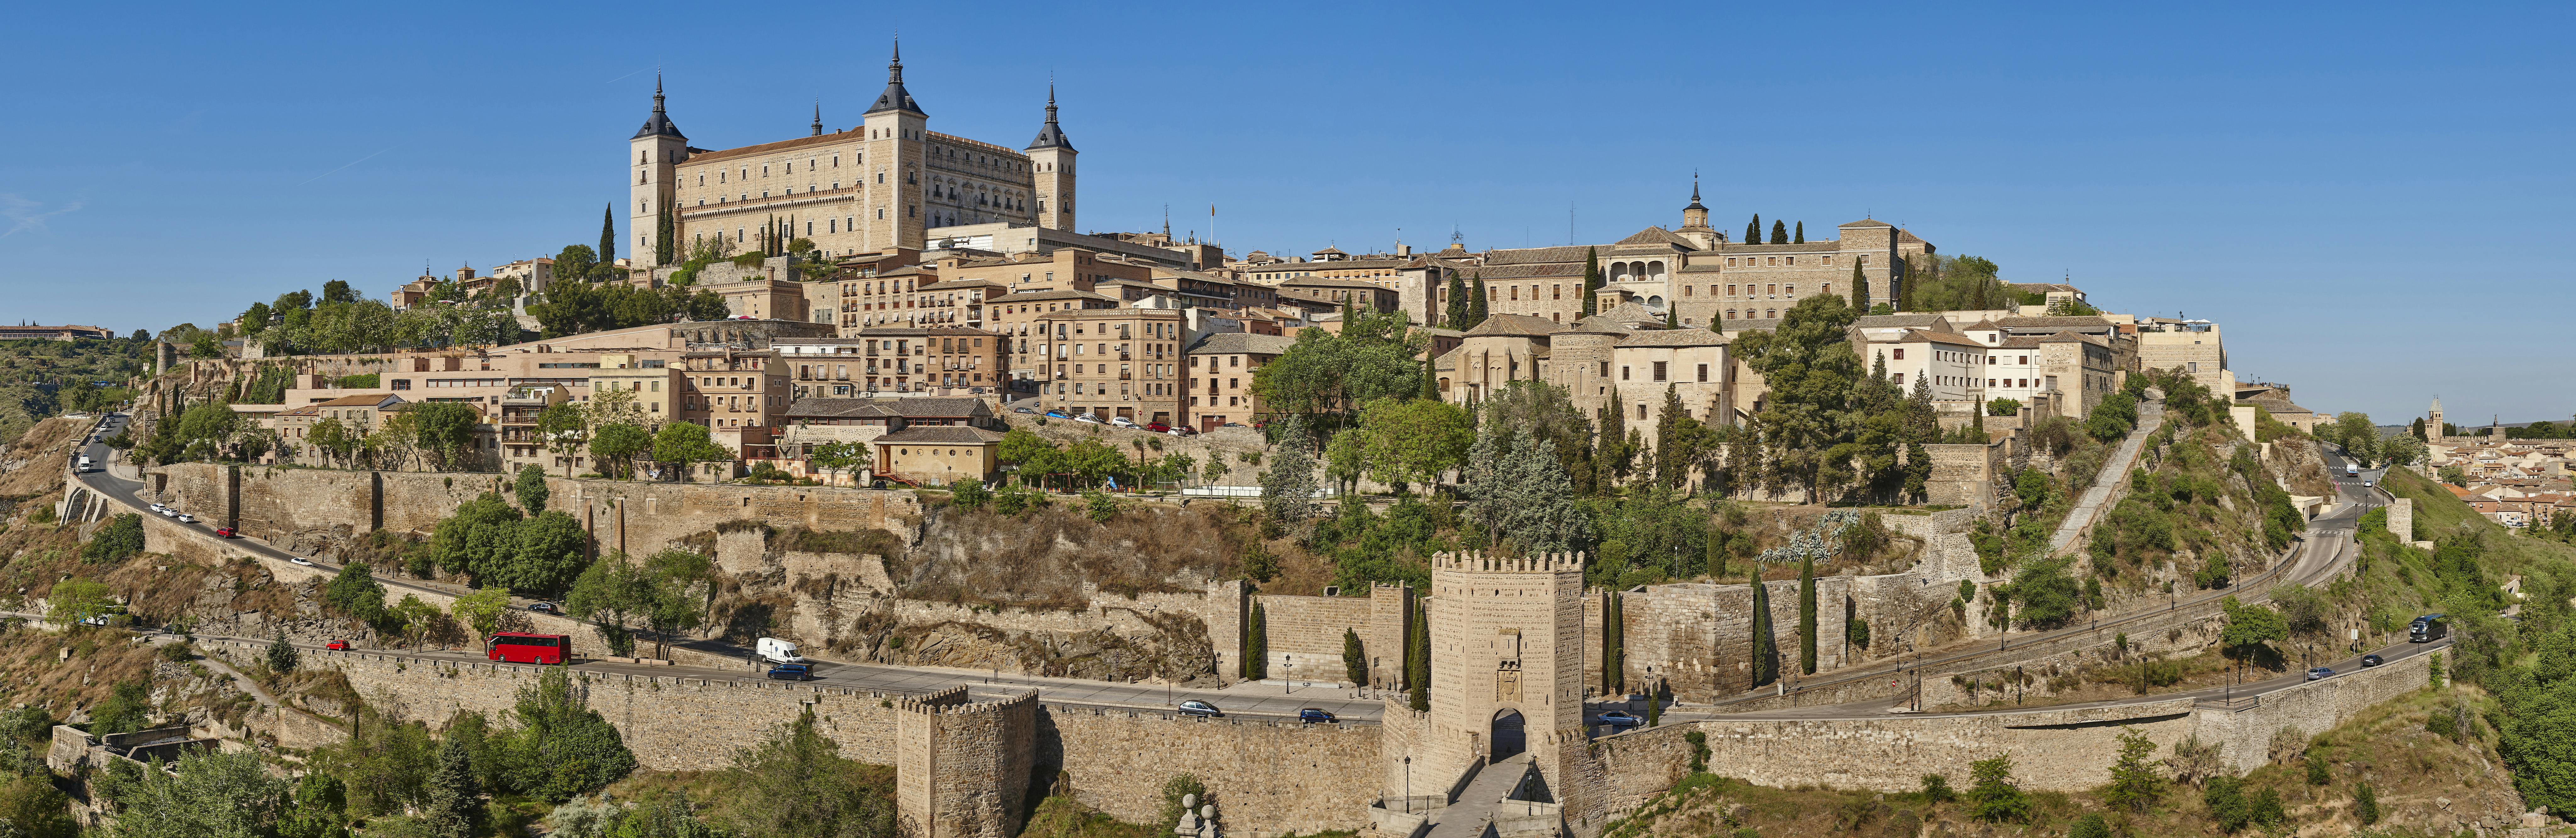 Visita guiada a pie de día completo a Toledo desde Madrid